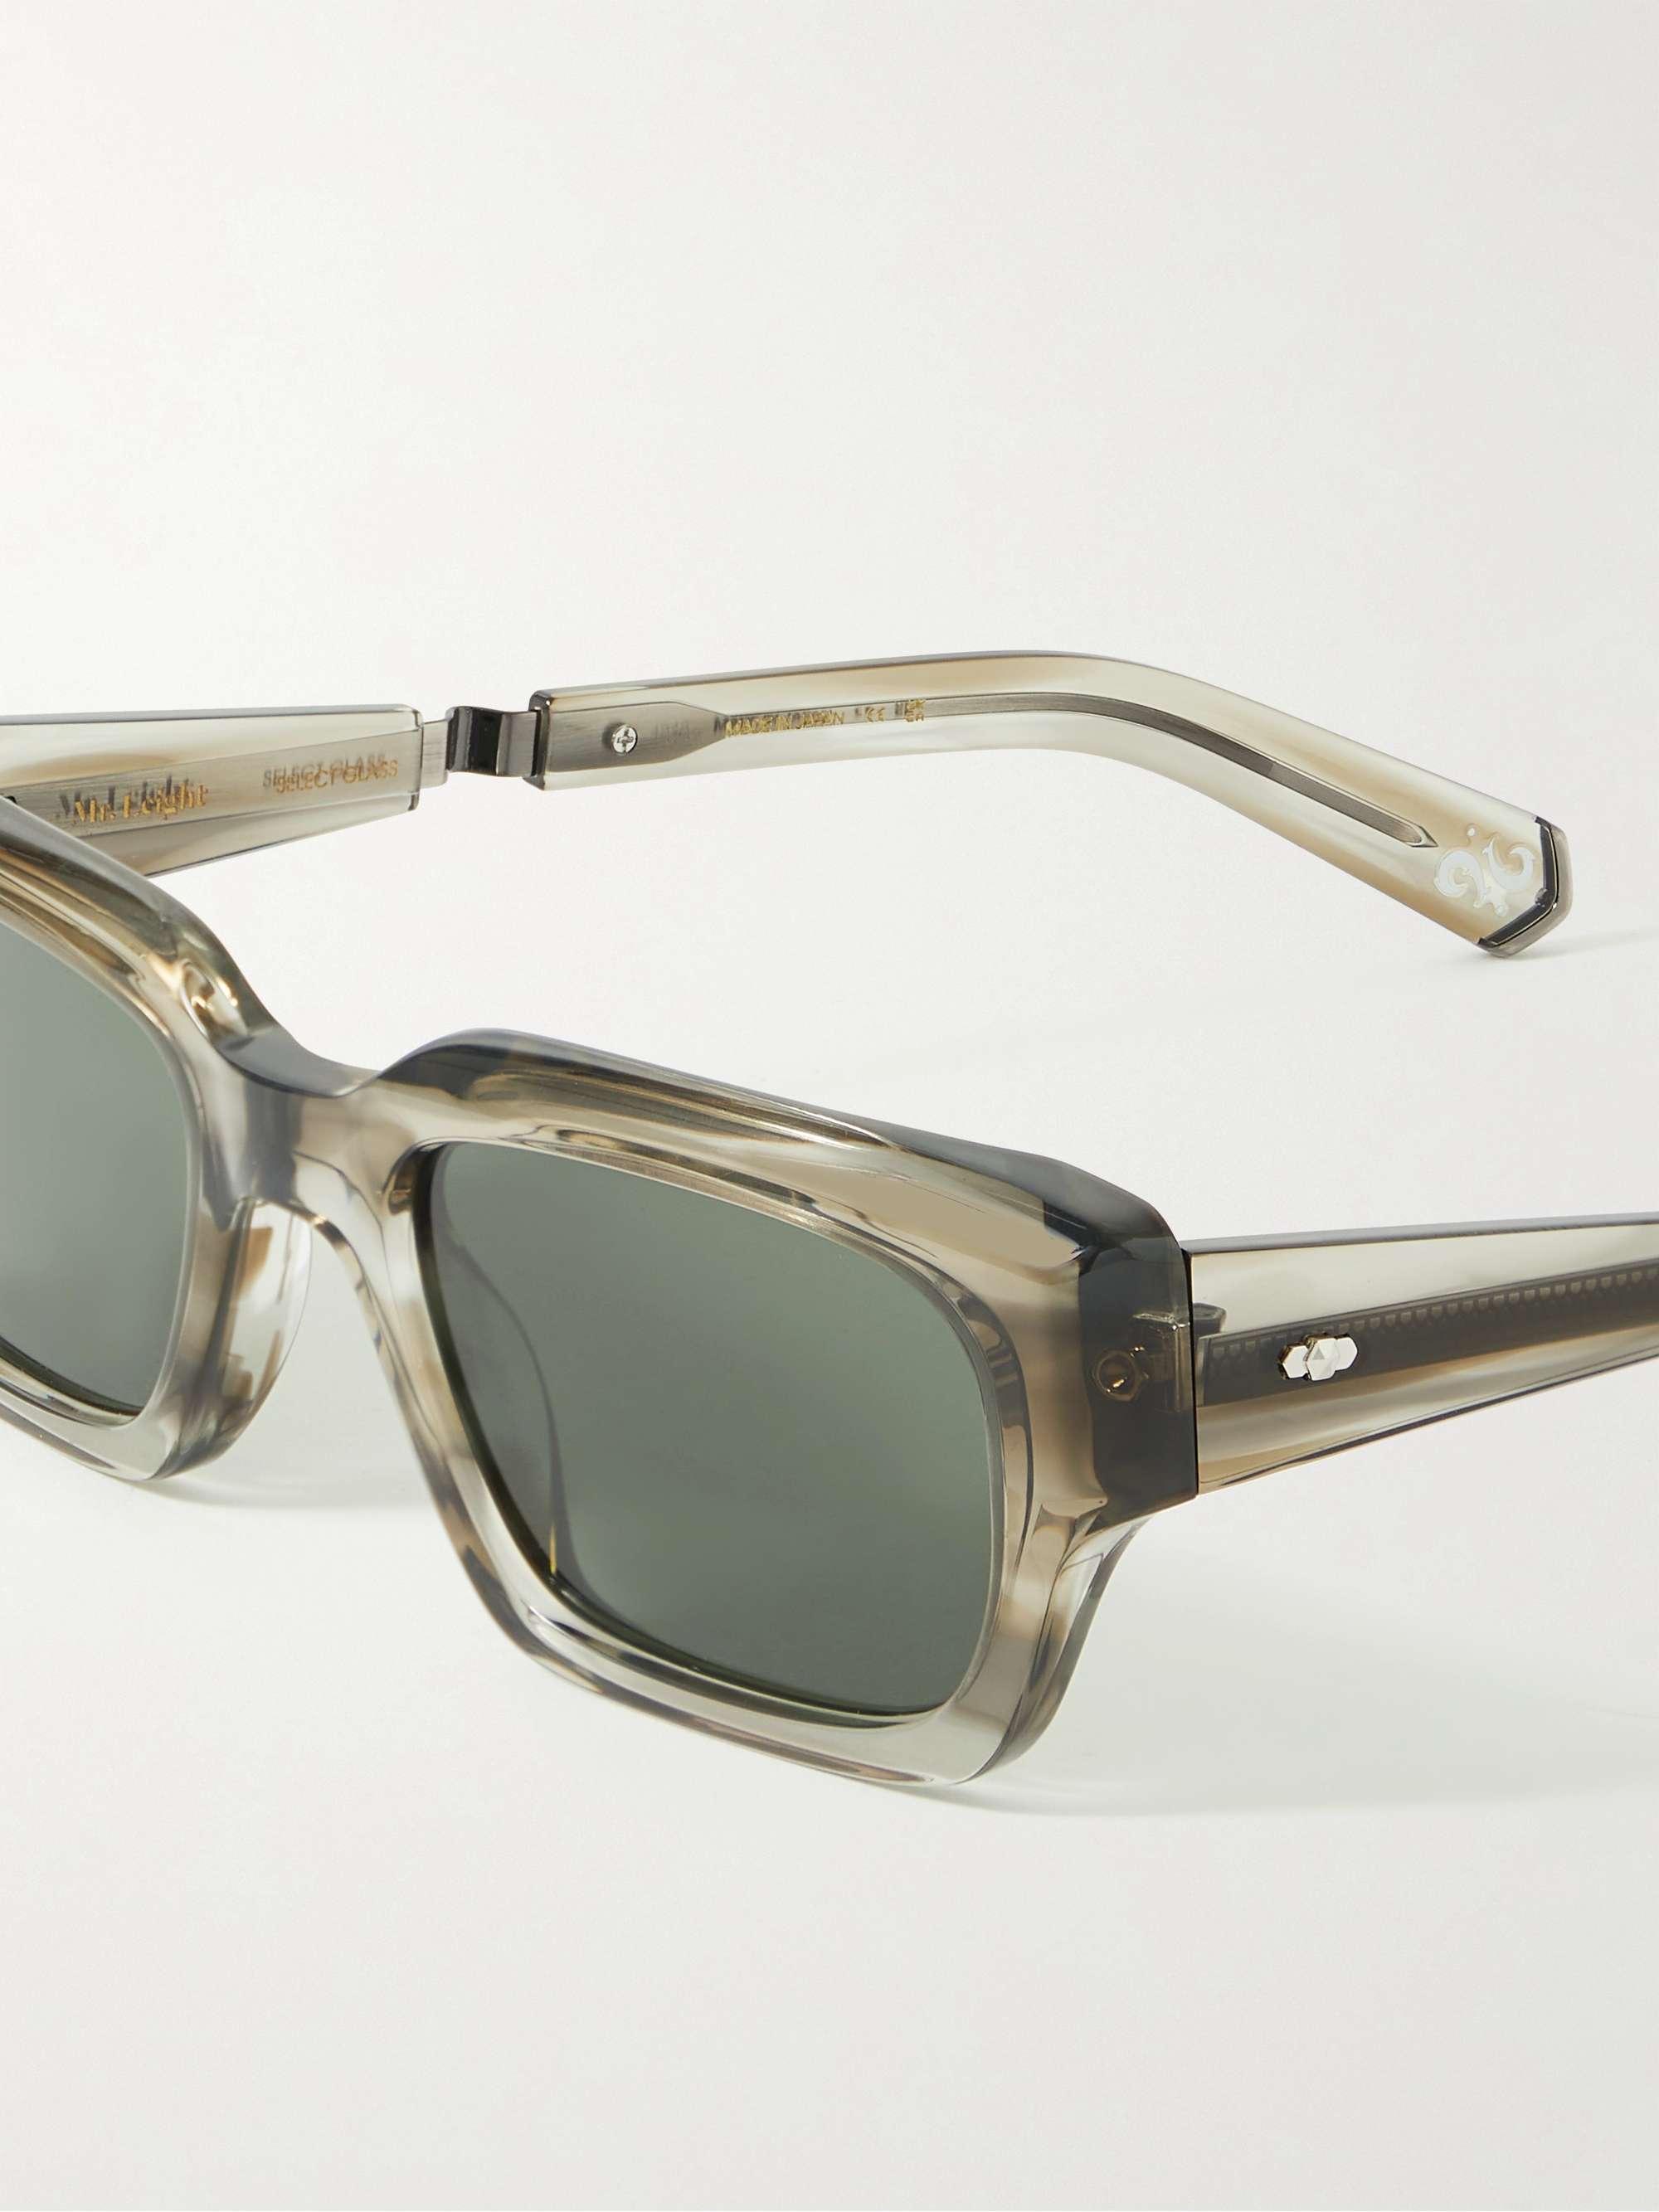 MR LEIGHT Maverick S Sonnenbrille mit rechteckigem Rahmen aus Azetat mit stahlgrauen Details